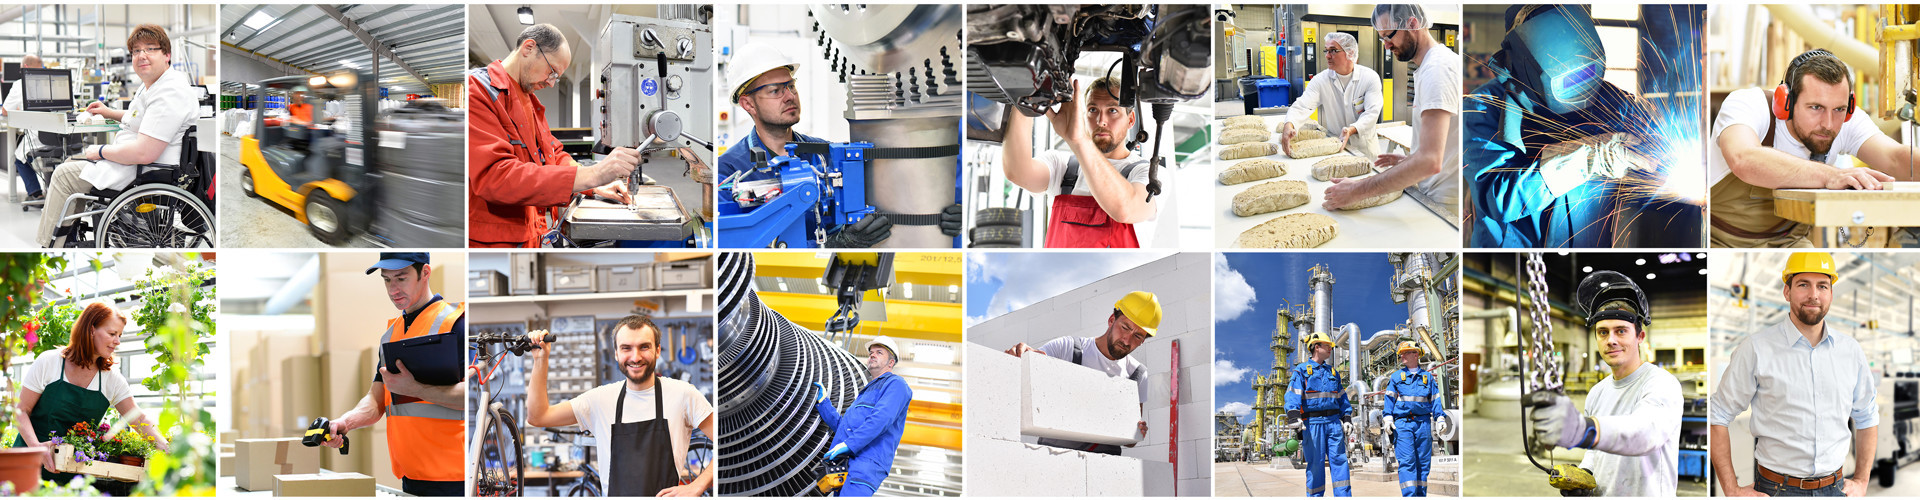 Eine Collage unterschiedlichster Arbeitsplätze im Industrie- Handwerks- und Dienstleistungssektor.